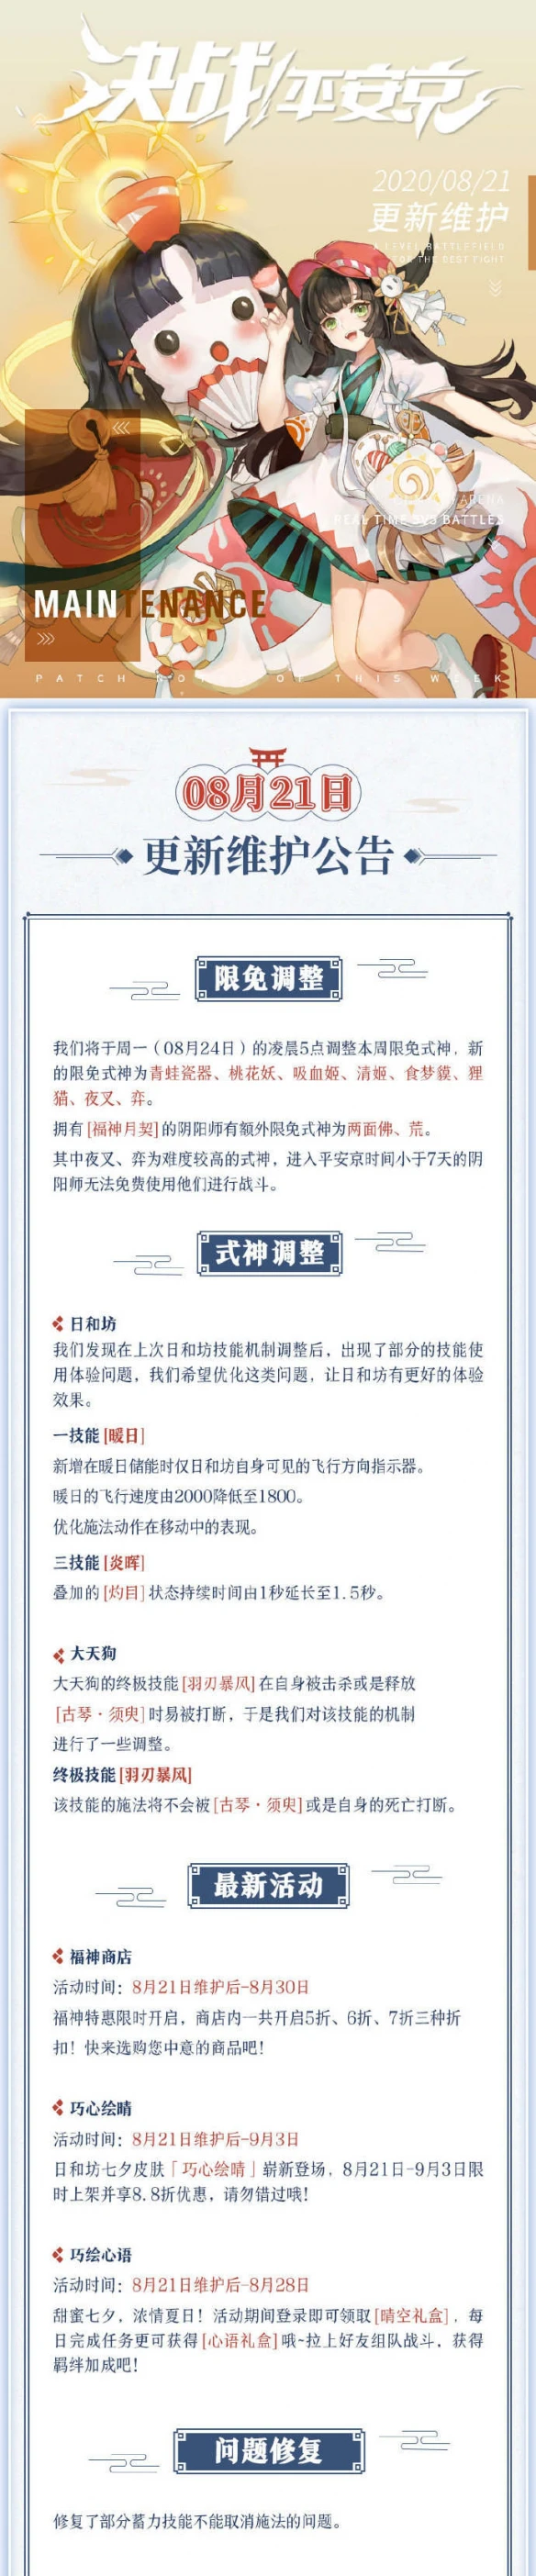 《决战平安京》8月21日更新公告 日和坊全新七夕系列皮肤上架